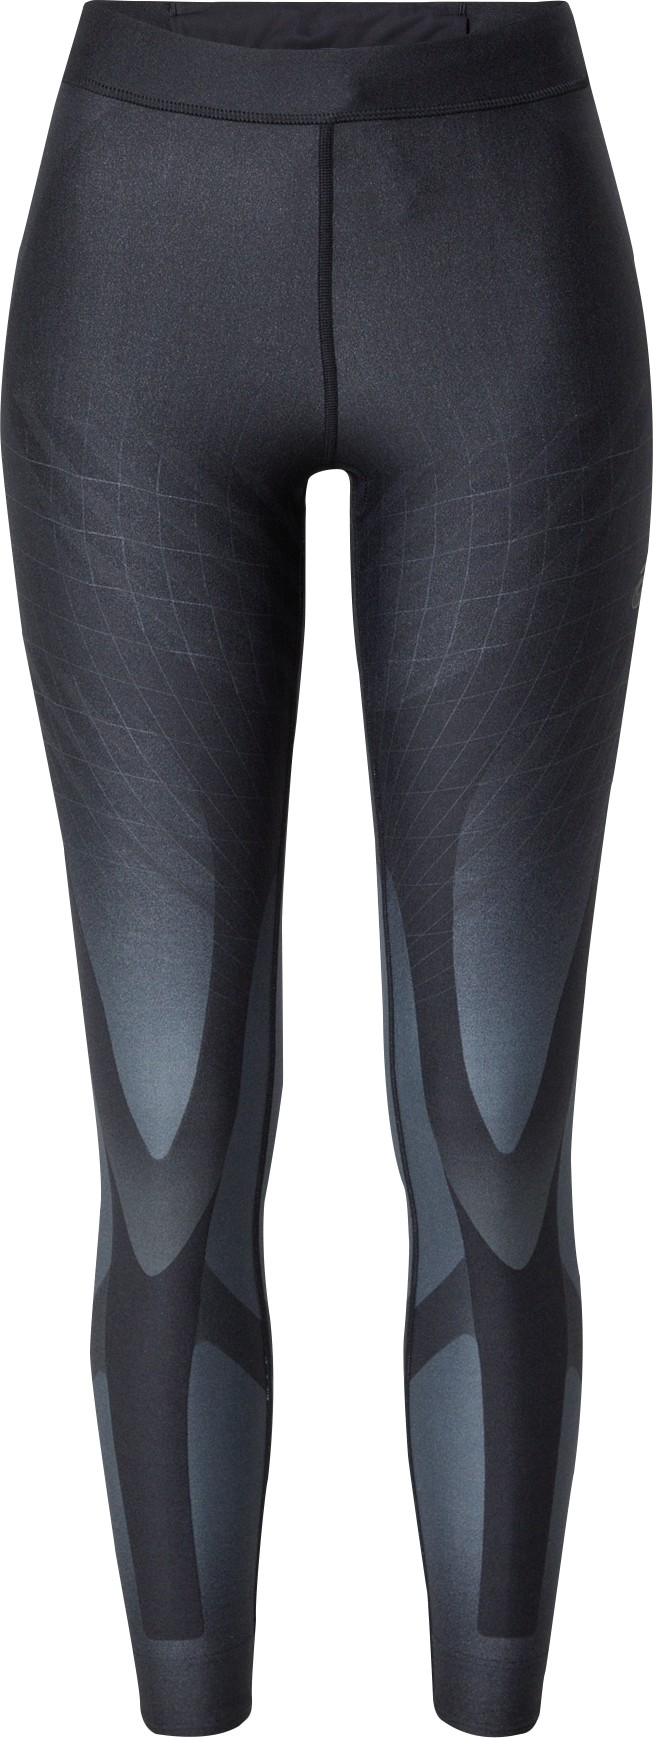 ASICS Sportovní kalhoty 'METARUN' černá / šedá